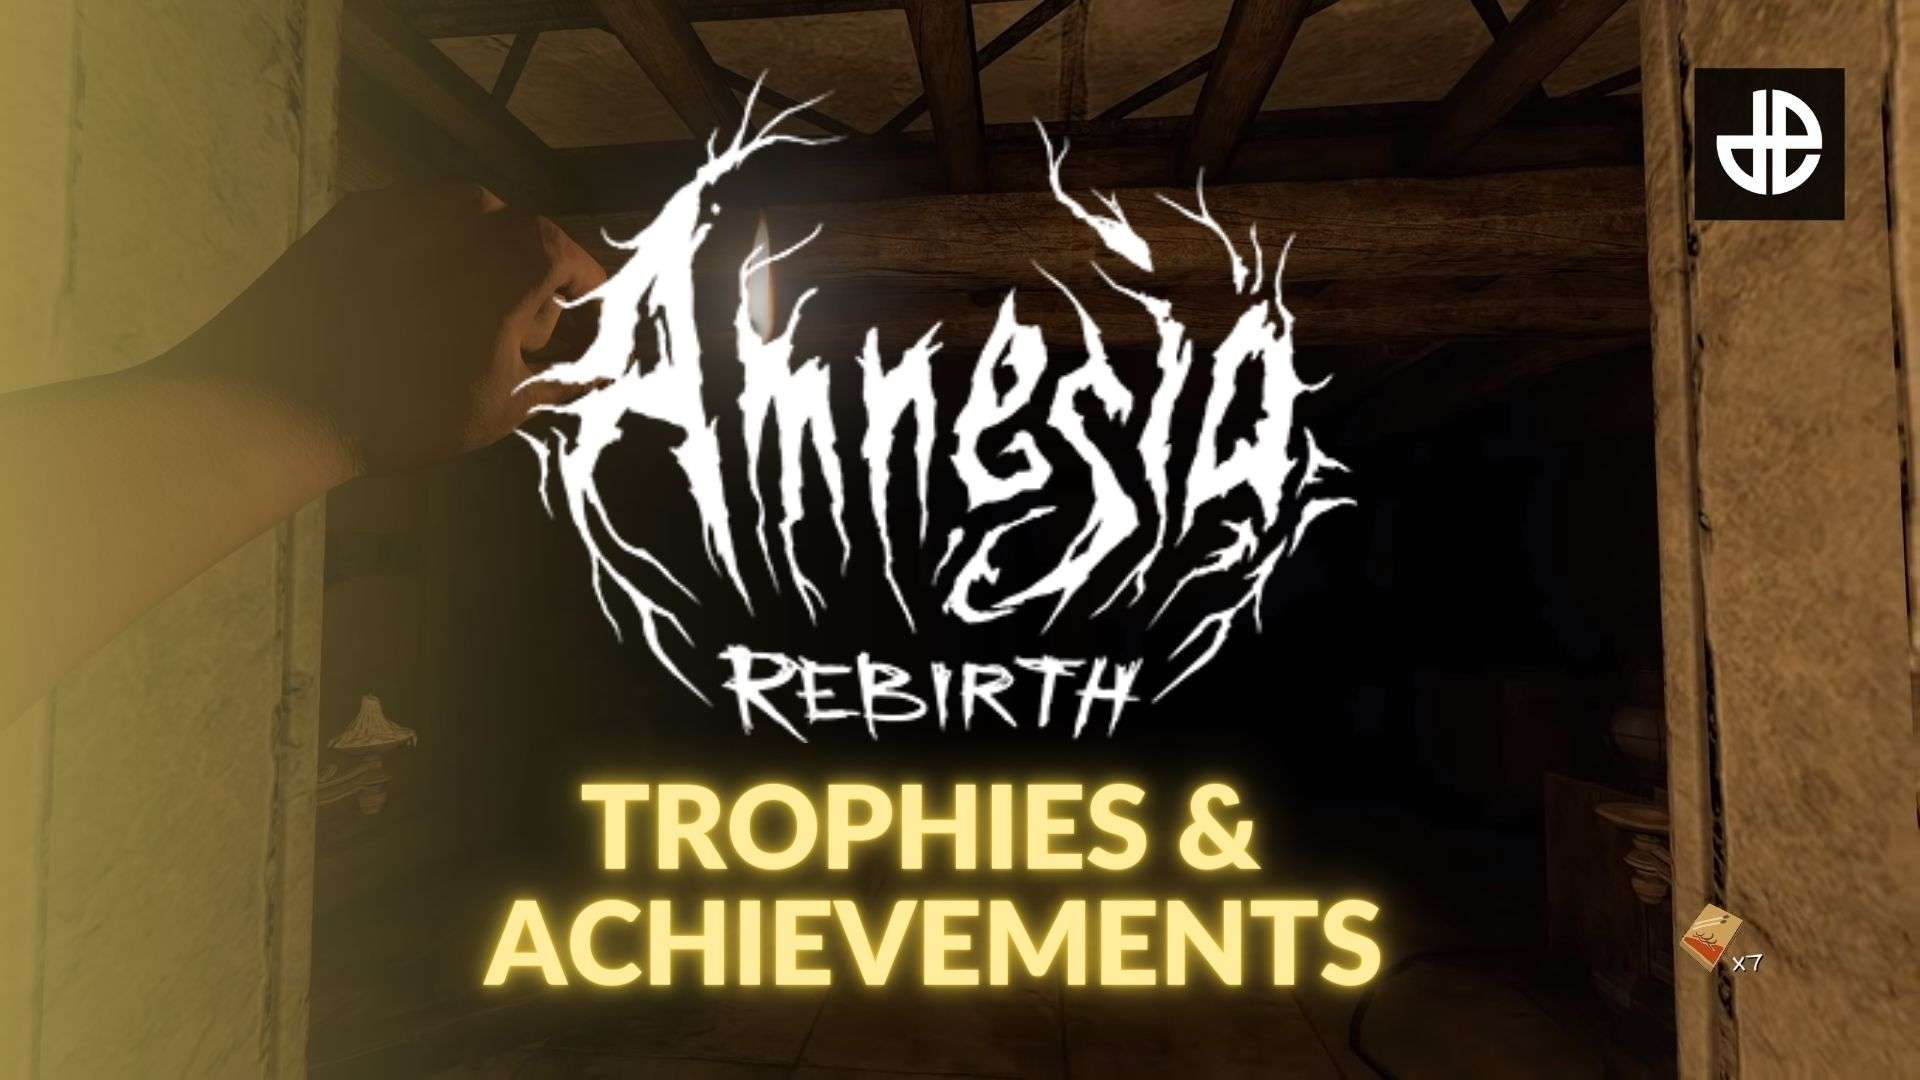 The Amnesia: Rebirth logo